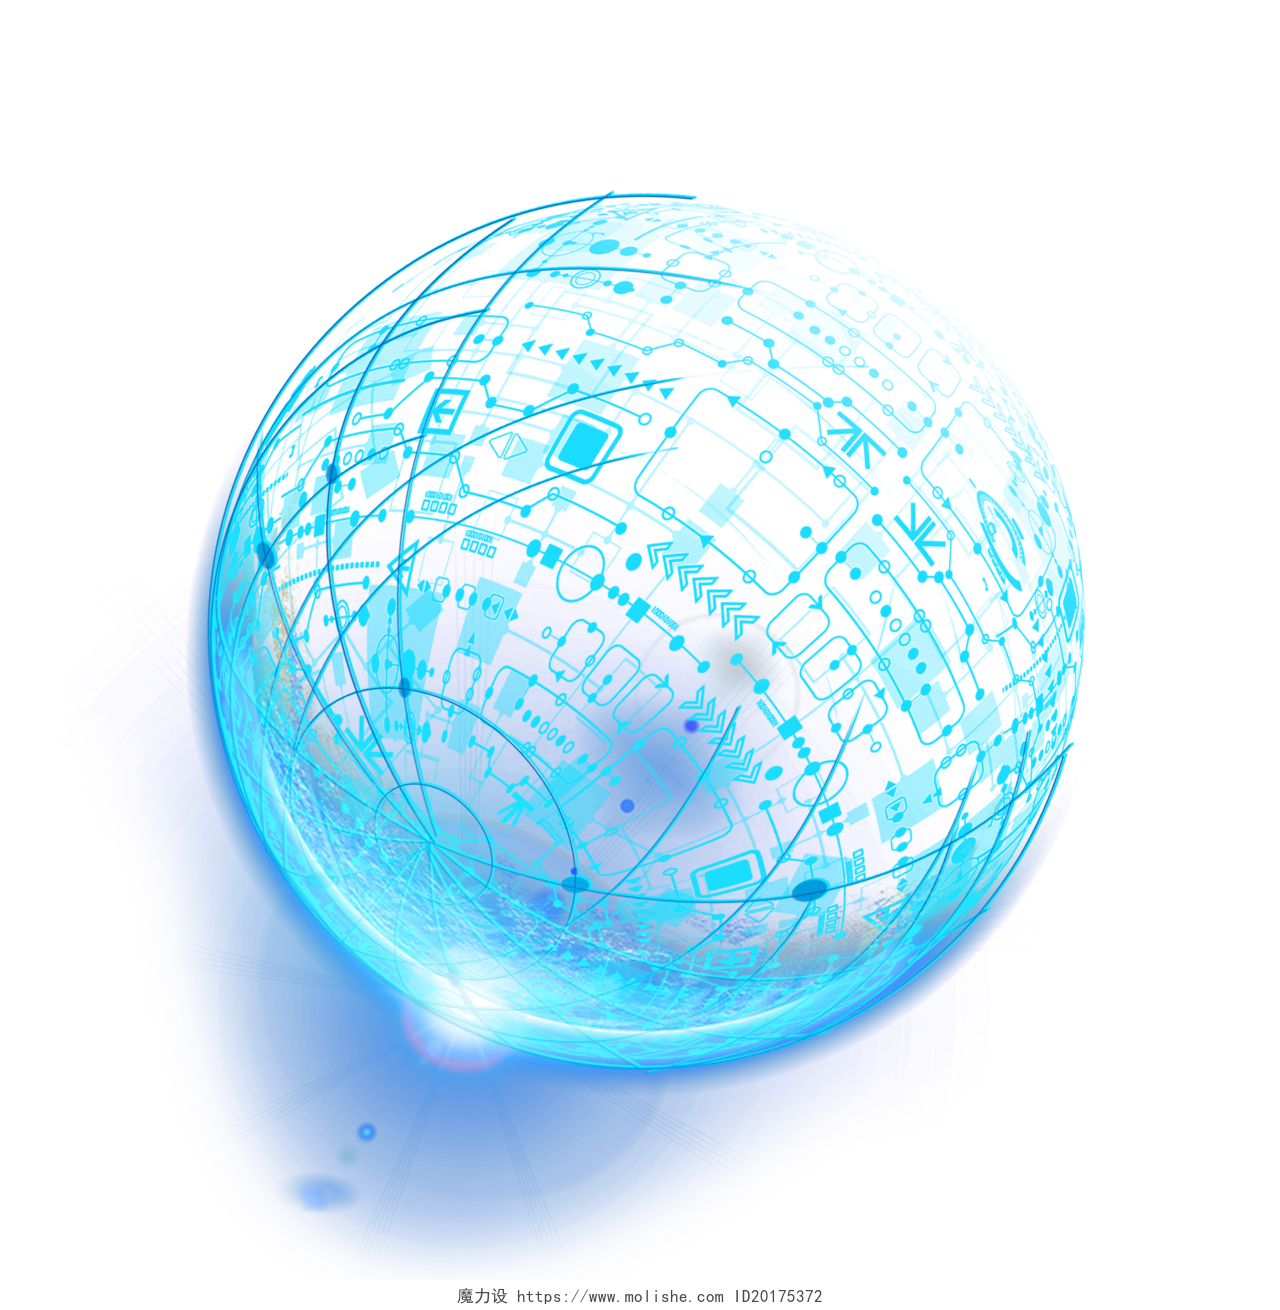 蓝色科技交互线条球体地球插画素材